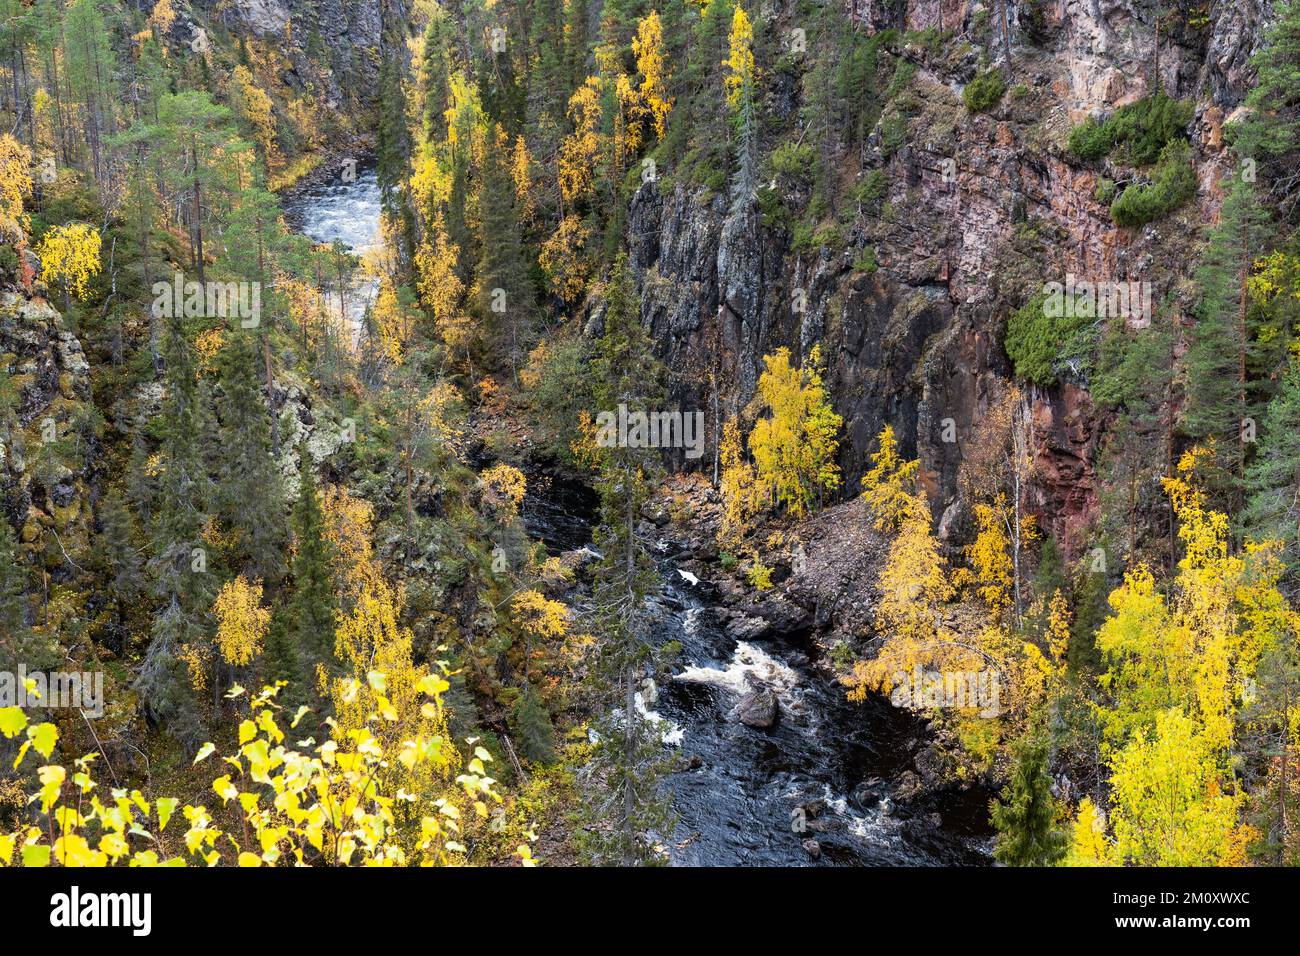 L'eau s'écoulant dans les rapides d'un canyon dans le parc national d'Oulanka, dans le nord de la Finlande Banque D'Images